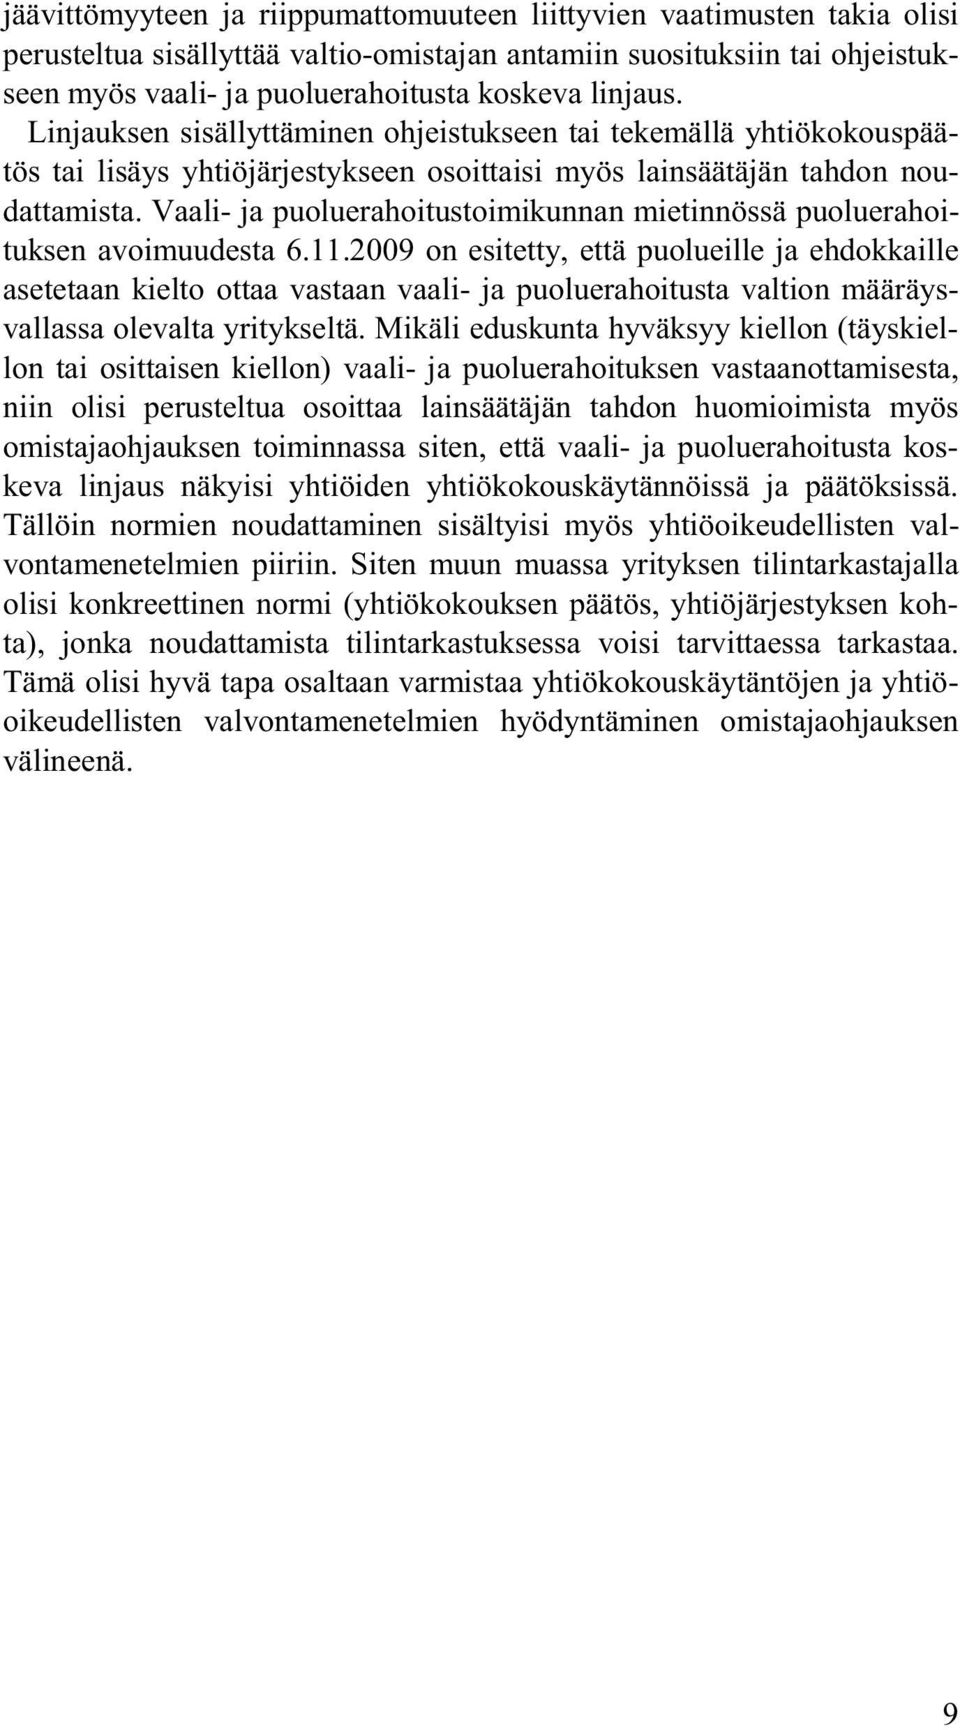 Vaali- ja puoluerahoitustoimikunnan mietinnössä puoluerahoituksen avoimuudesta 6.11.